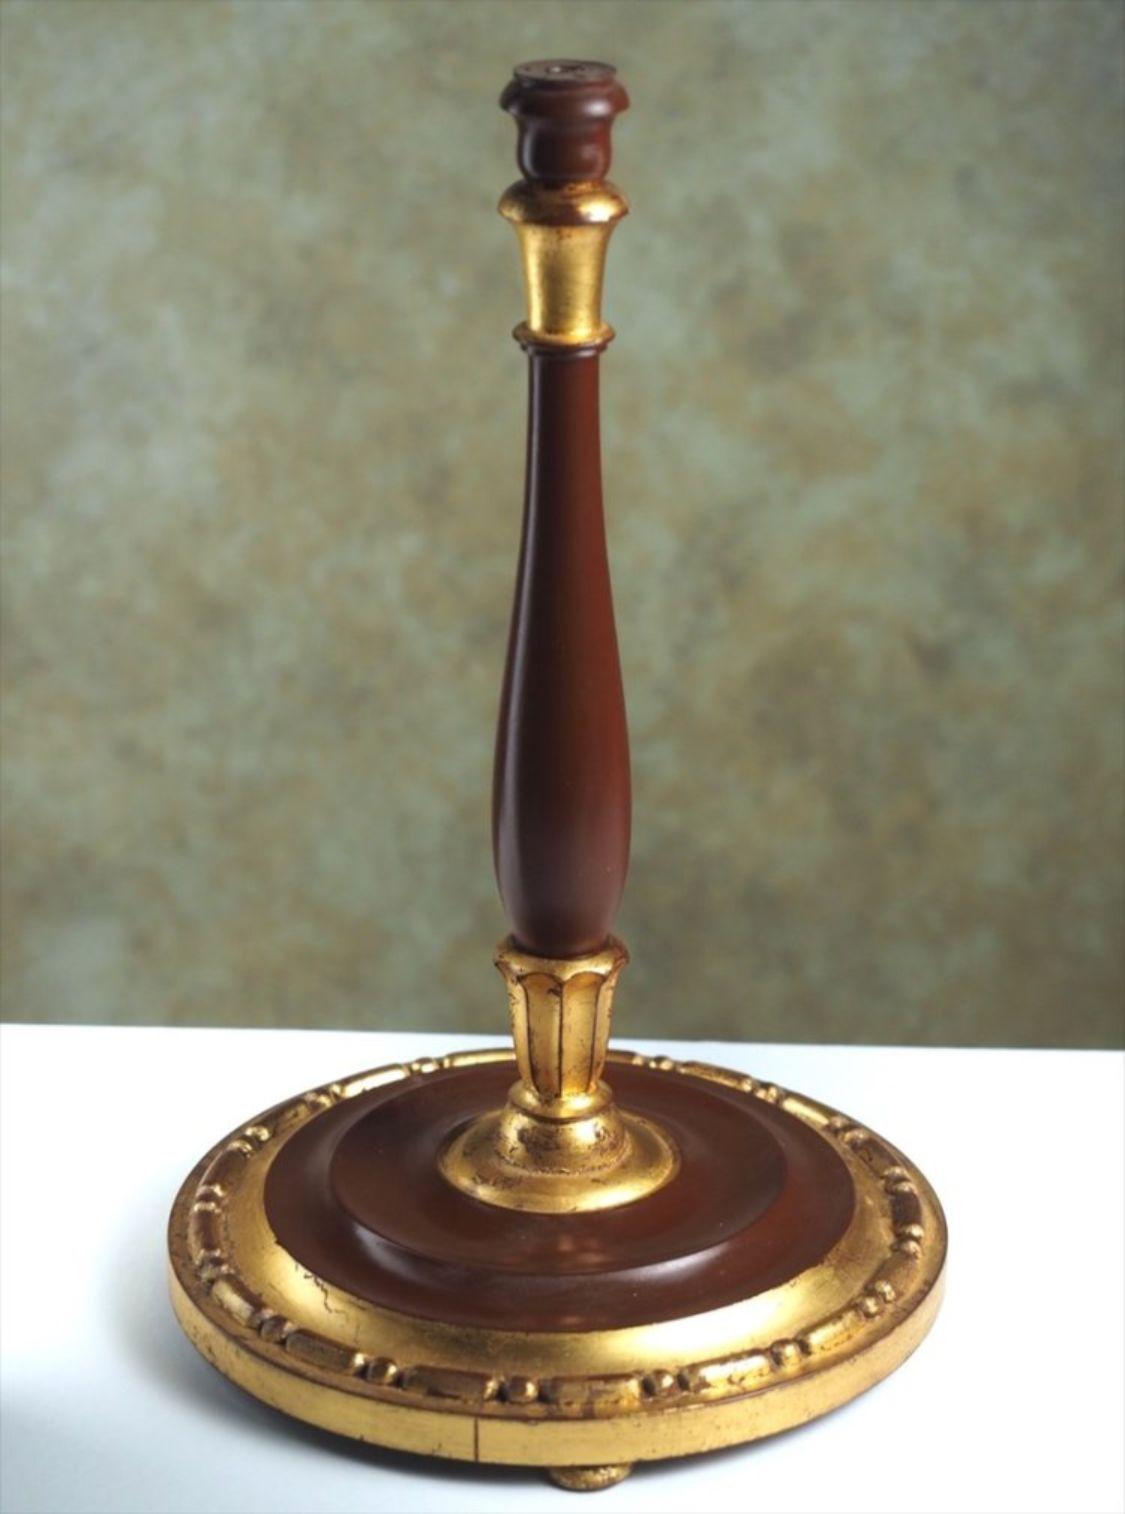 Lampe de table Art Déco française classique en bois sculpté doré et patiné, par Paul Follot, vers 1922. Mesures : 14